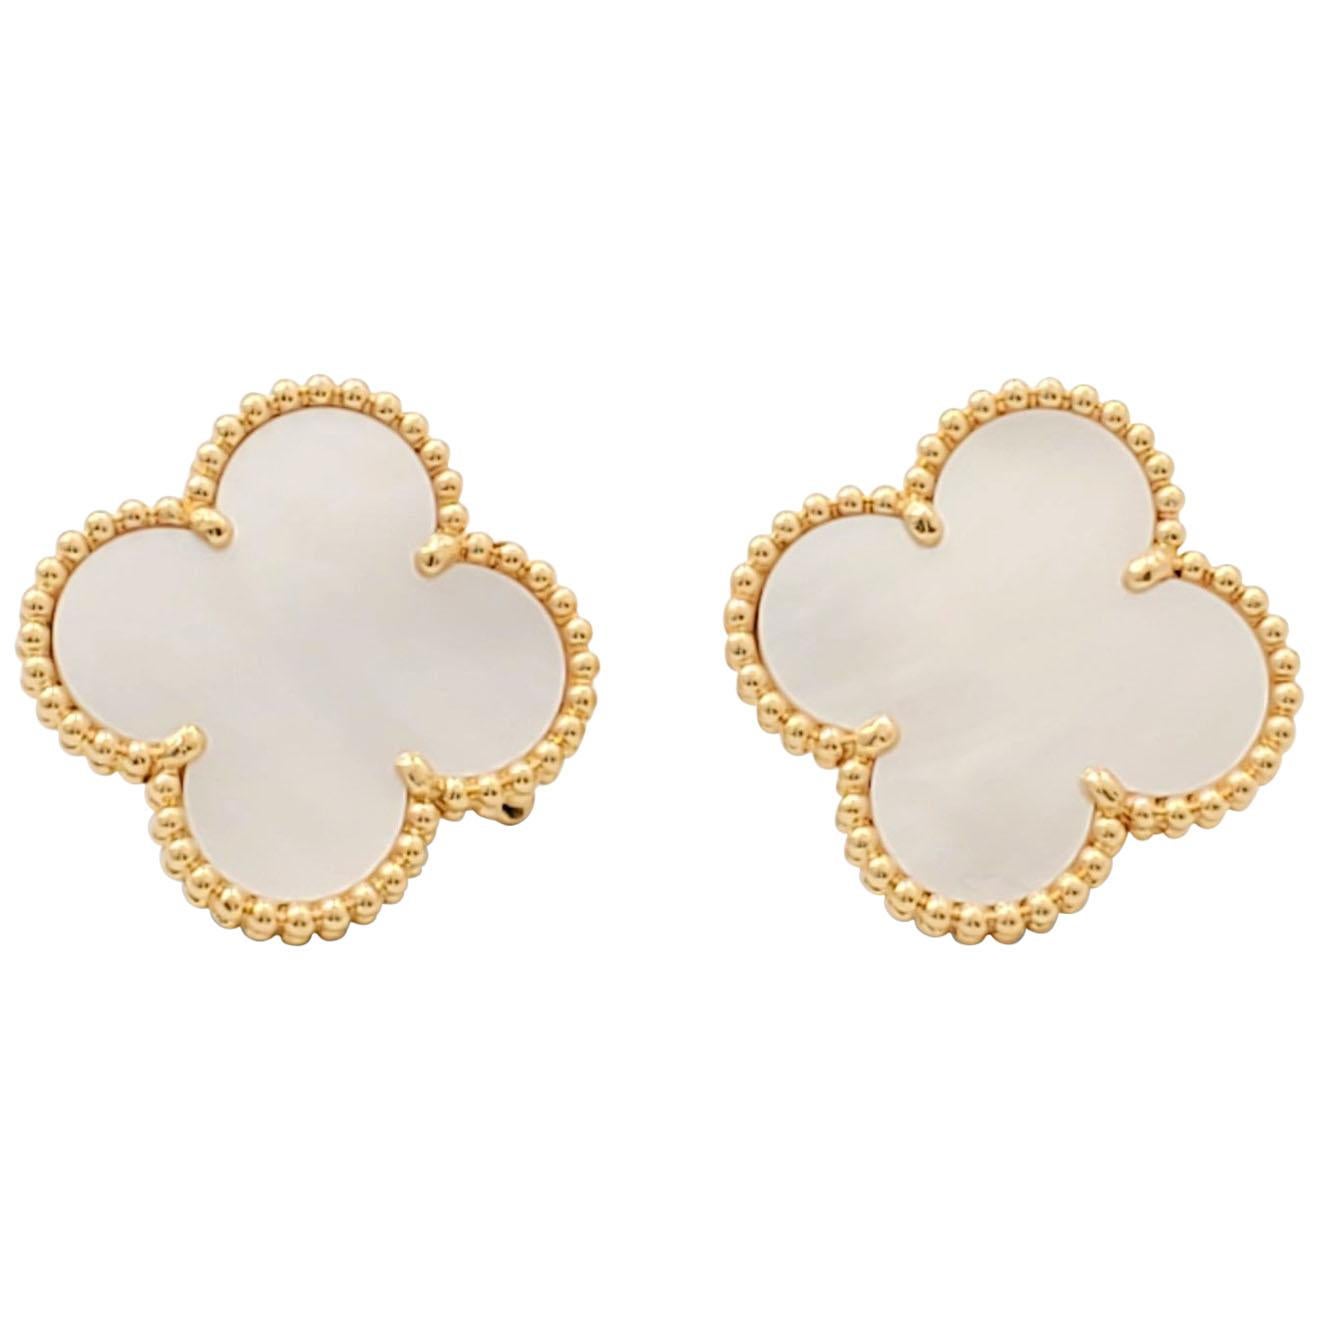 Van Cleef & Arpels Perlée earrings